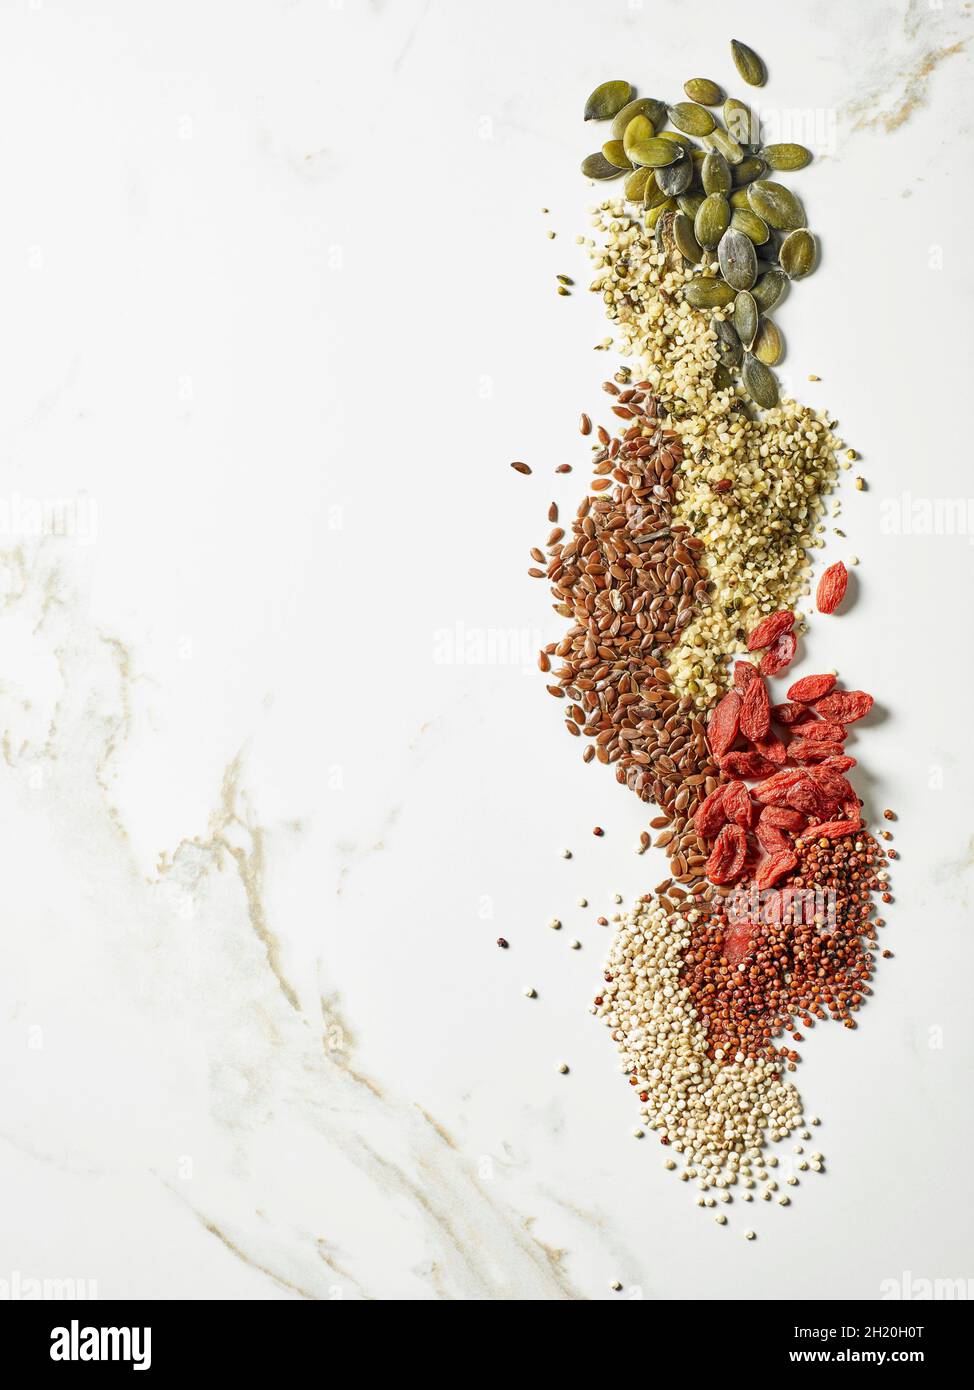 Kürbiskerne, Leinsamen, goji Samen, Hanf samen, Weiße und Rote Quinoa Samen (von oben gesehen) Stockfoto